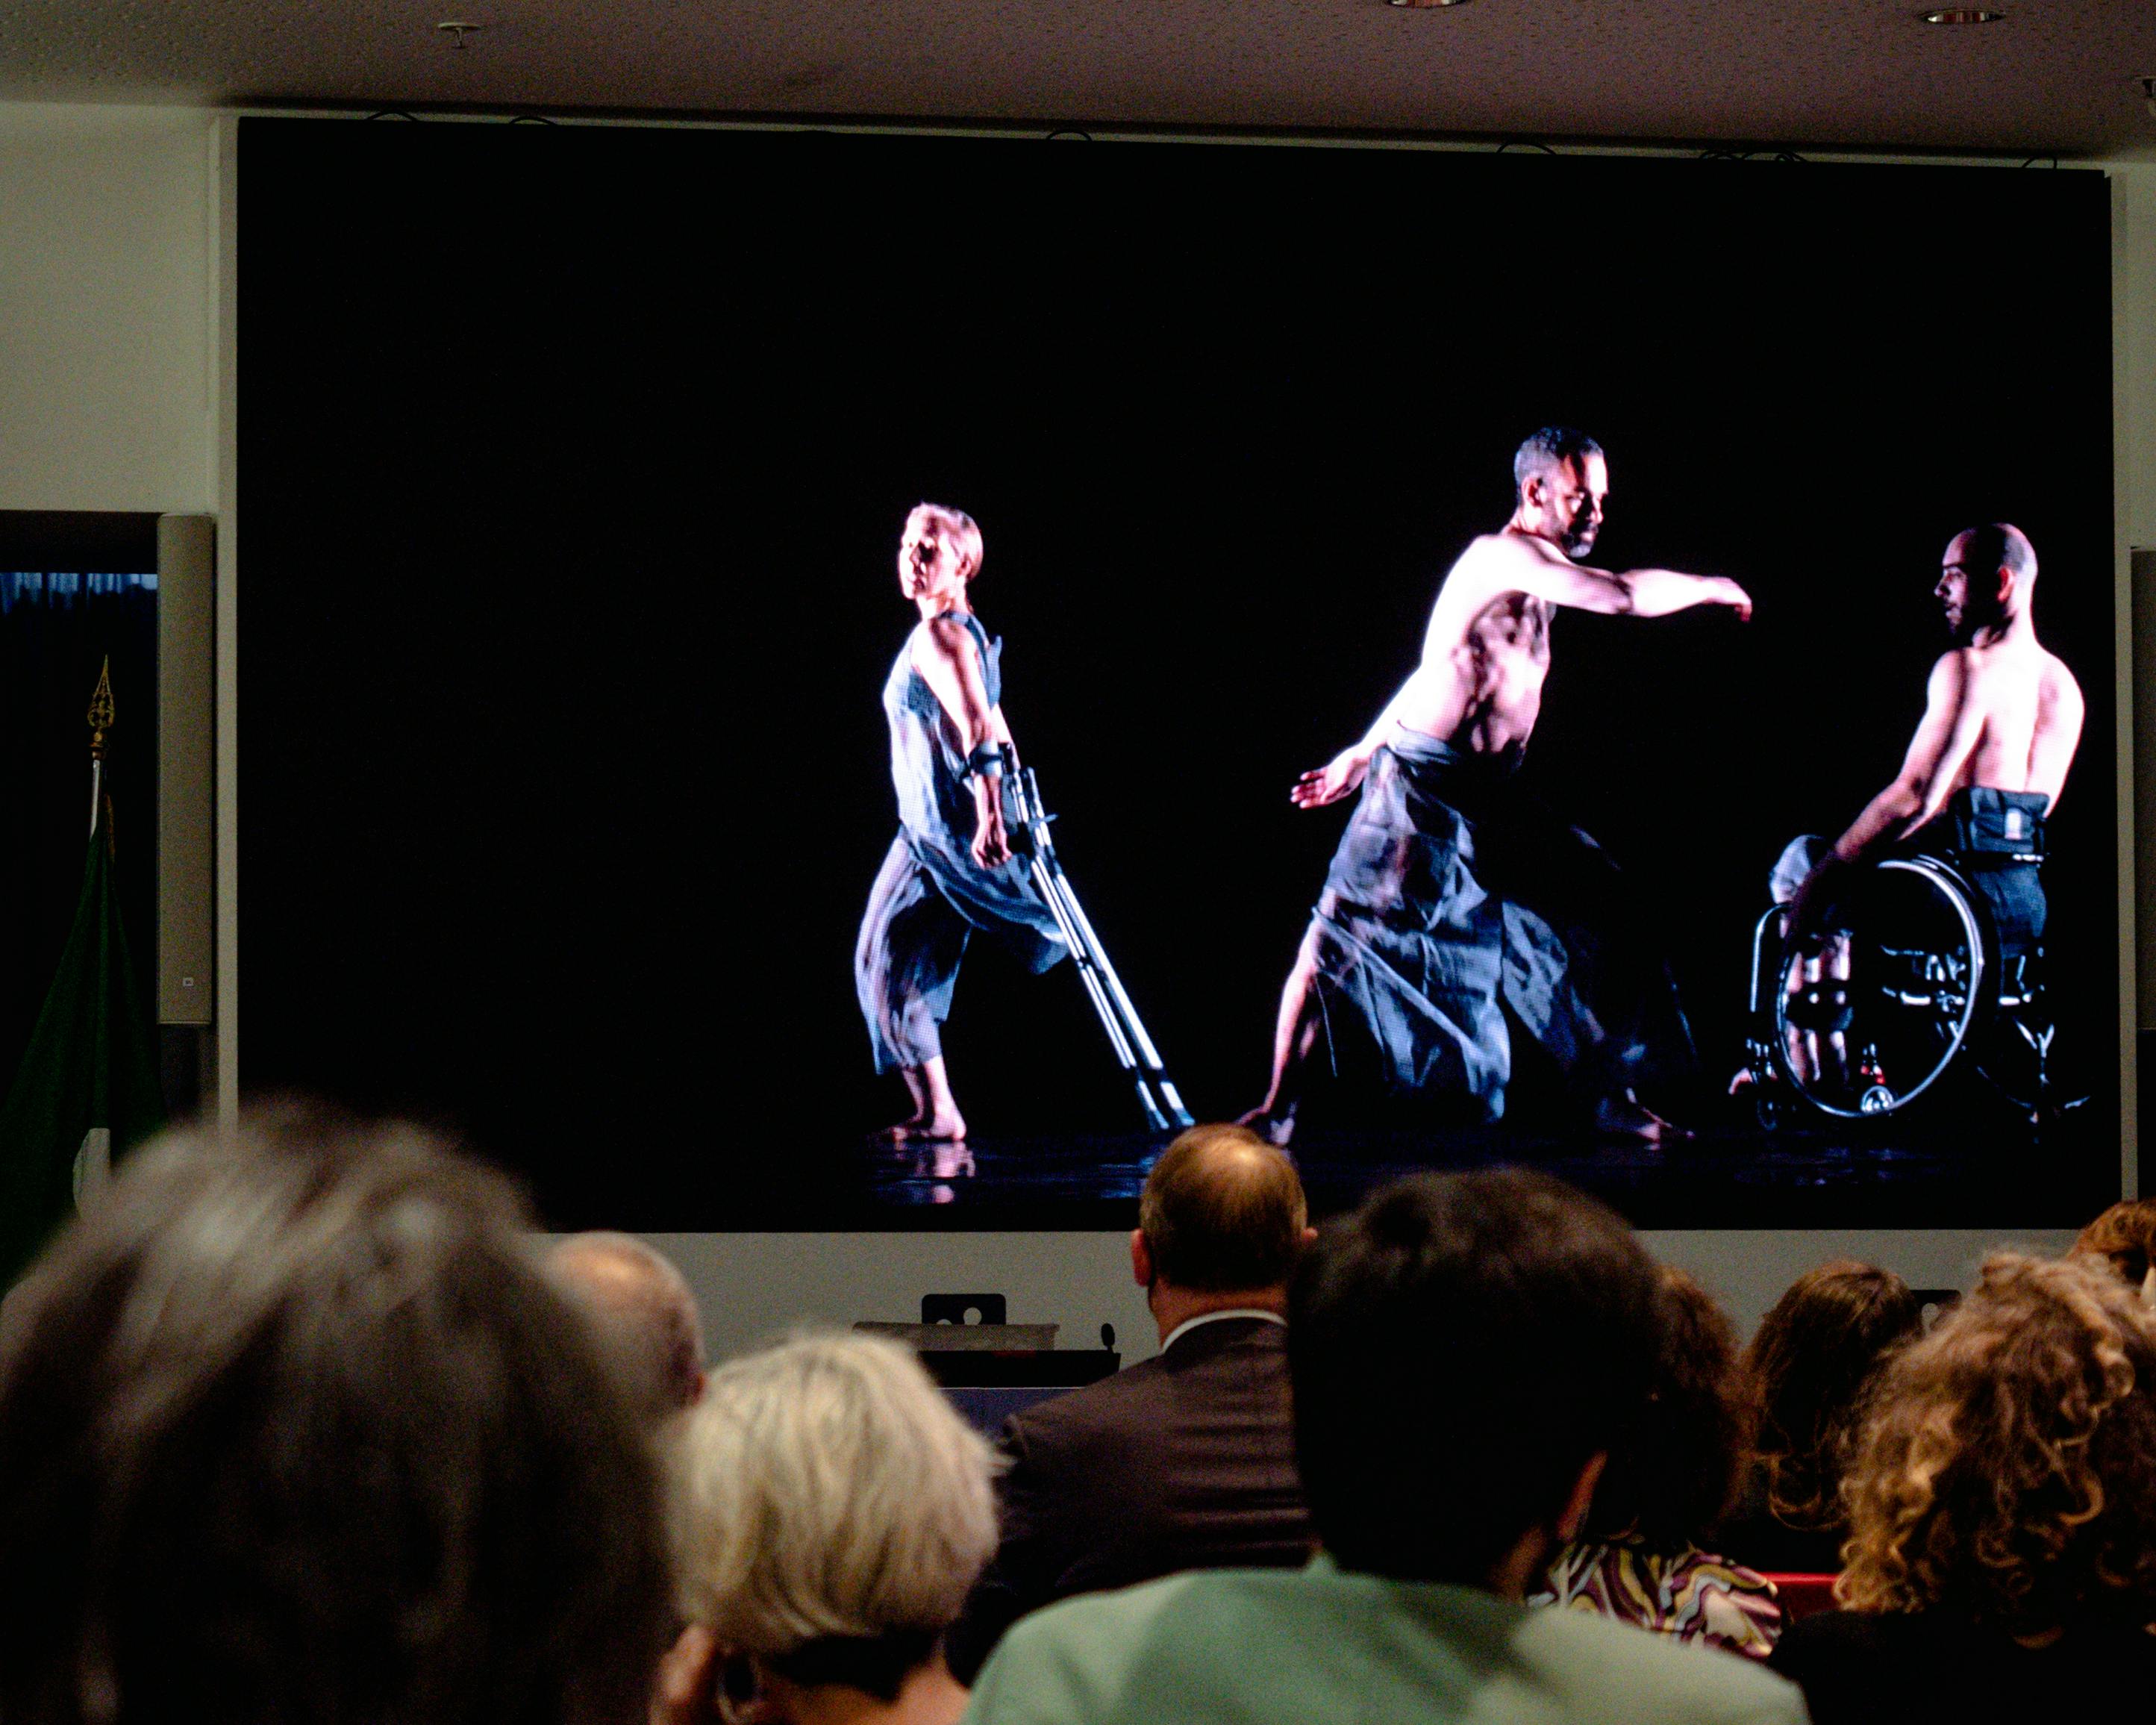 Pubblico guarda un video in proiezione con una danzatrice e due danzatori con disabilità.